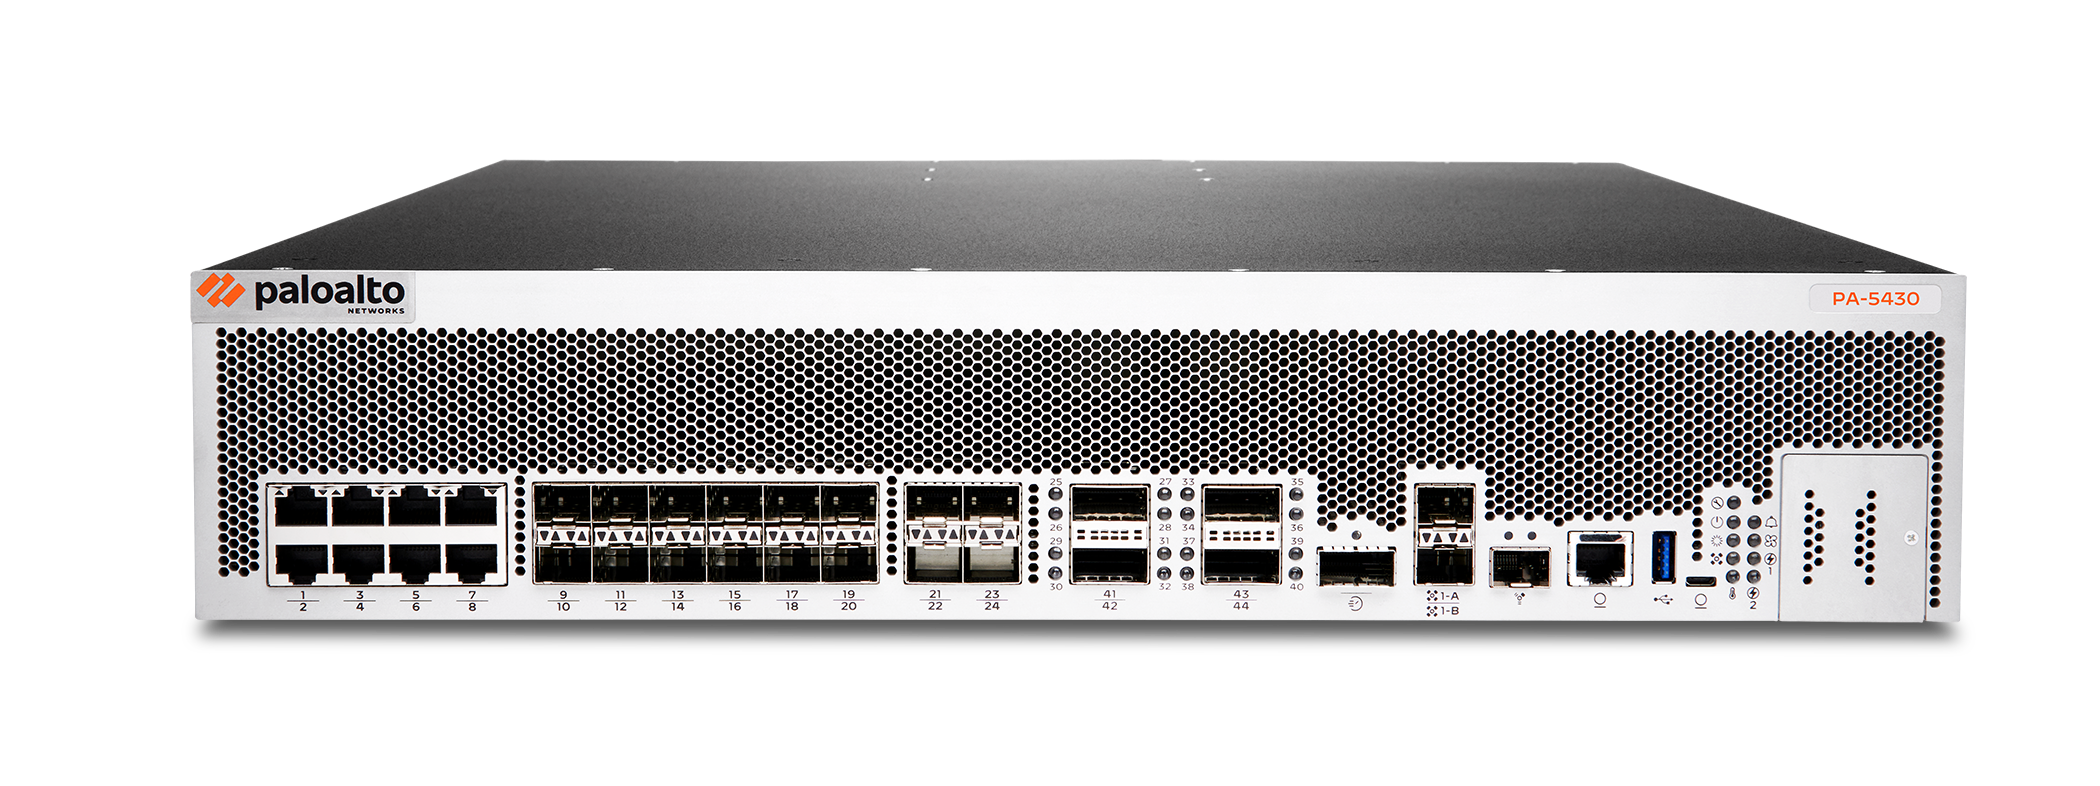 พาโล อัลโต้ เน็ตเวิร์กส์ เปิดตัว PAN-OS 10.2 Nebula ผสานเทคโนโลยี Deep Learning ครั้งแรกในอุตสาหกรรม พร้อมเปิดตัว Next-Generation Firewall รุ่นที่ 4 PA-3400และ PA-5400 นำแมชชีนเลิร์นนิ่งมาขับเคลื่อนการทำงาน